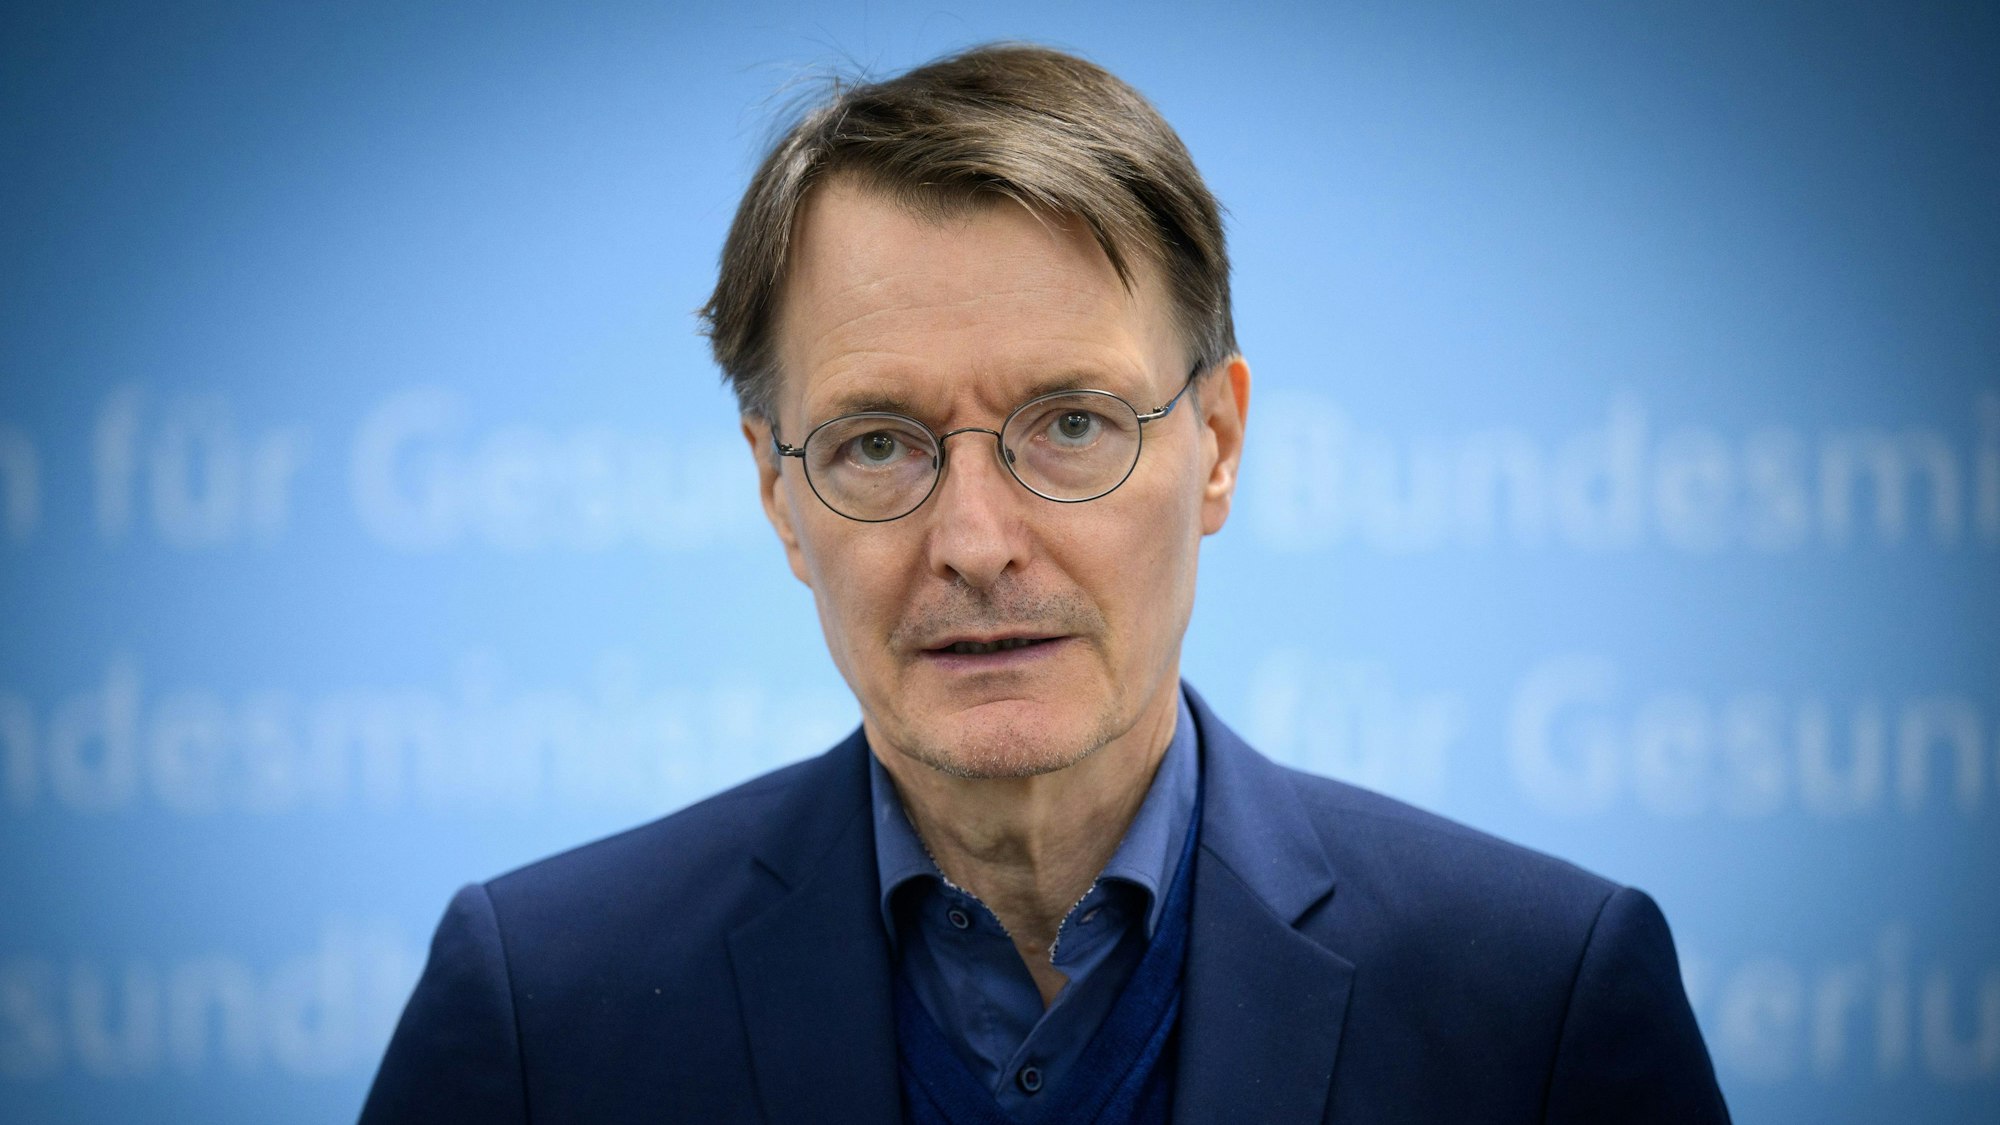 Karl Lauterbach (SPD), Bundesminister für Gesundheit, ist vor einem blauen Hintergrund zu sehen.